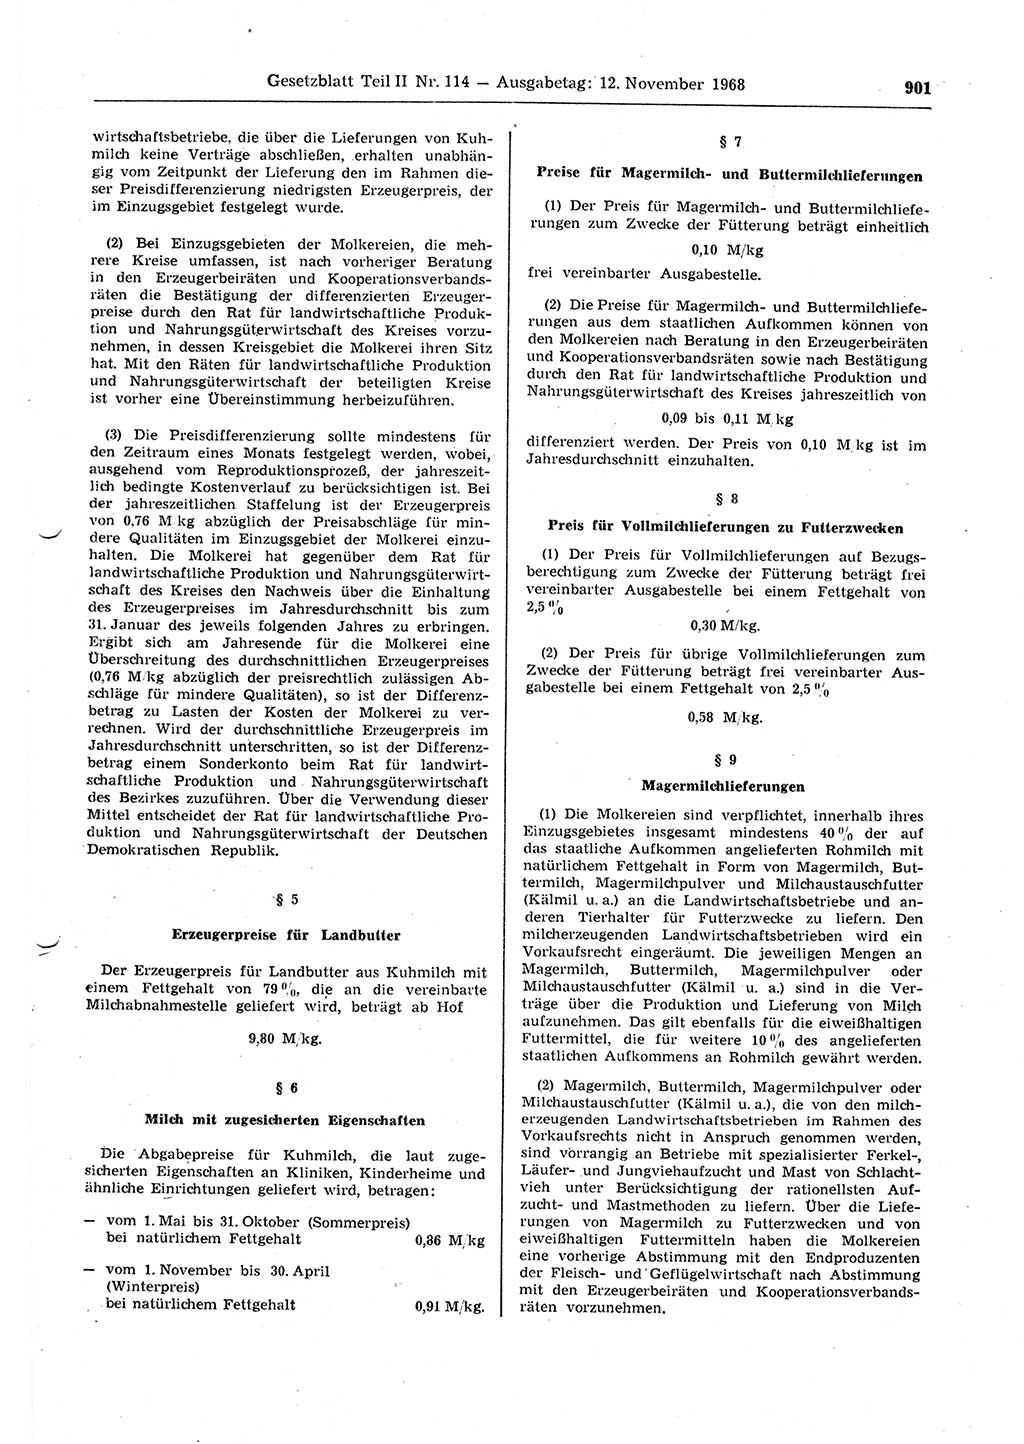 Gesetzblatt (GBl.) der Deutschen Demokratischen Republik (DDR) Teil ⅠⅠ 1968, Seite 901 (GBl. DDR ⅠⅠ 1968, S. 901)